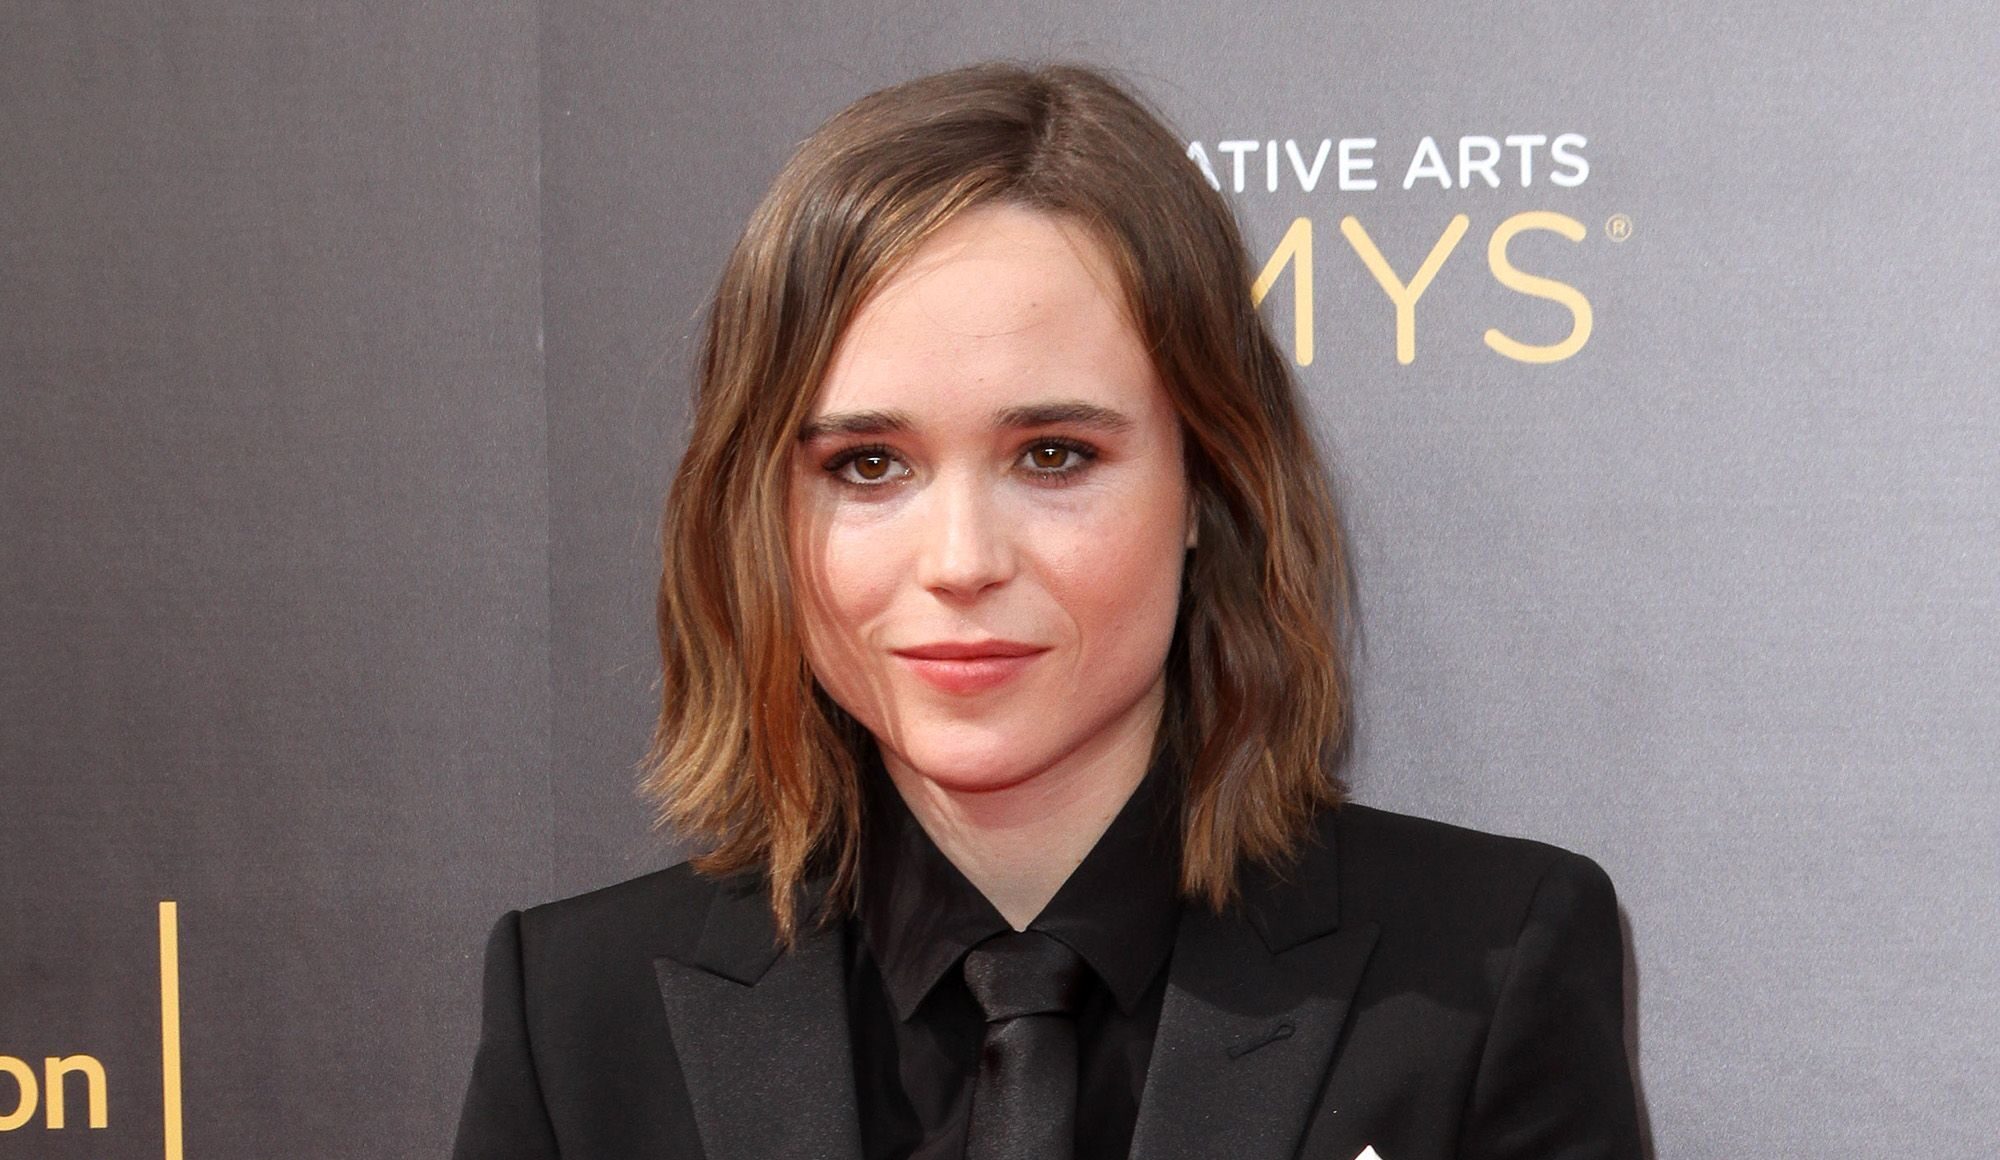 Ellen Page relève être transgenre et s'appelle désormais Elliot Page